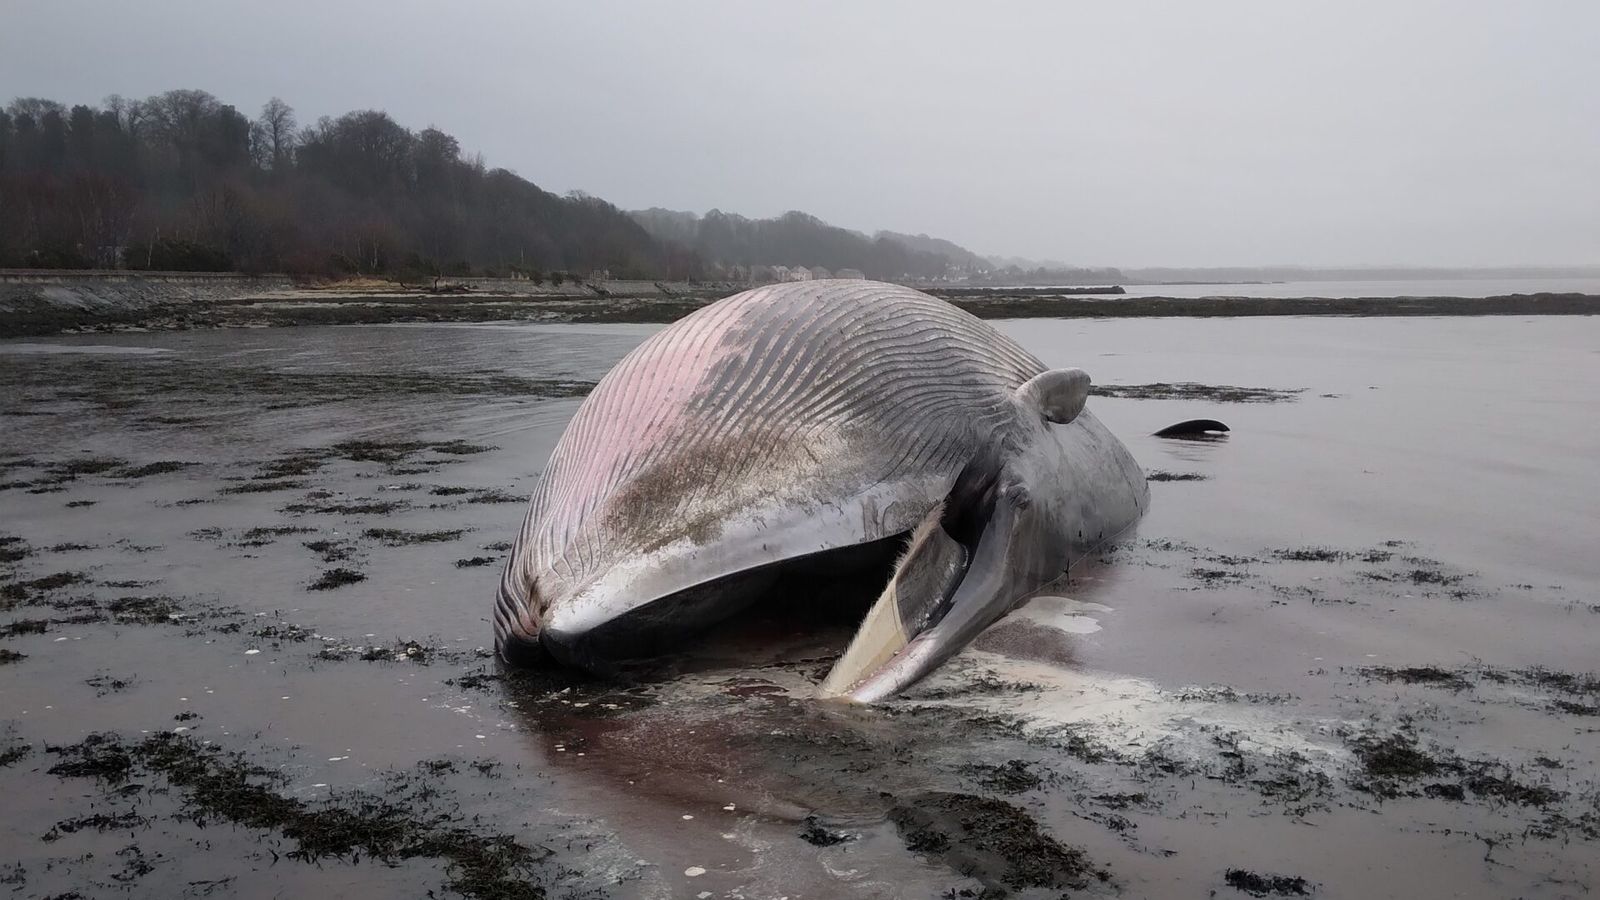 Обществеността е предупредена да не пресича живата железопътна линия, за да види мъртъв кит